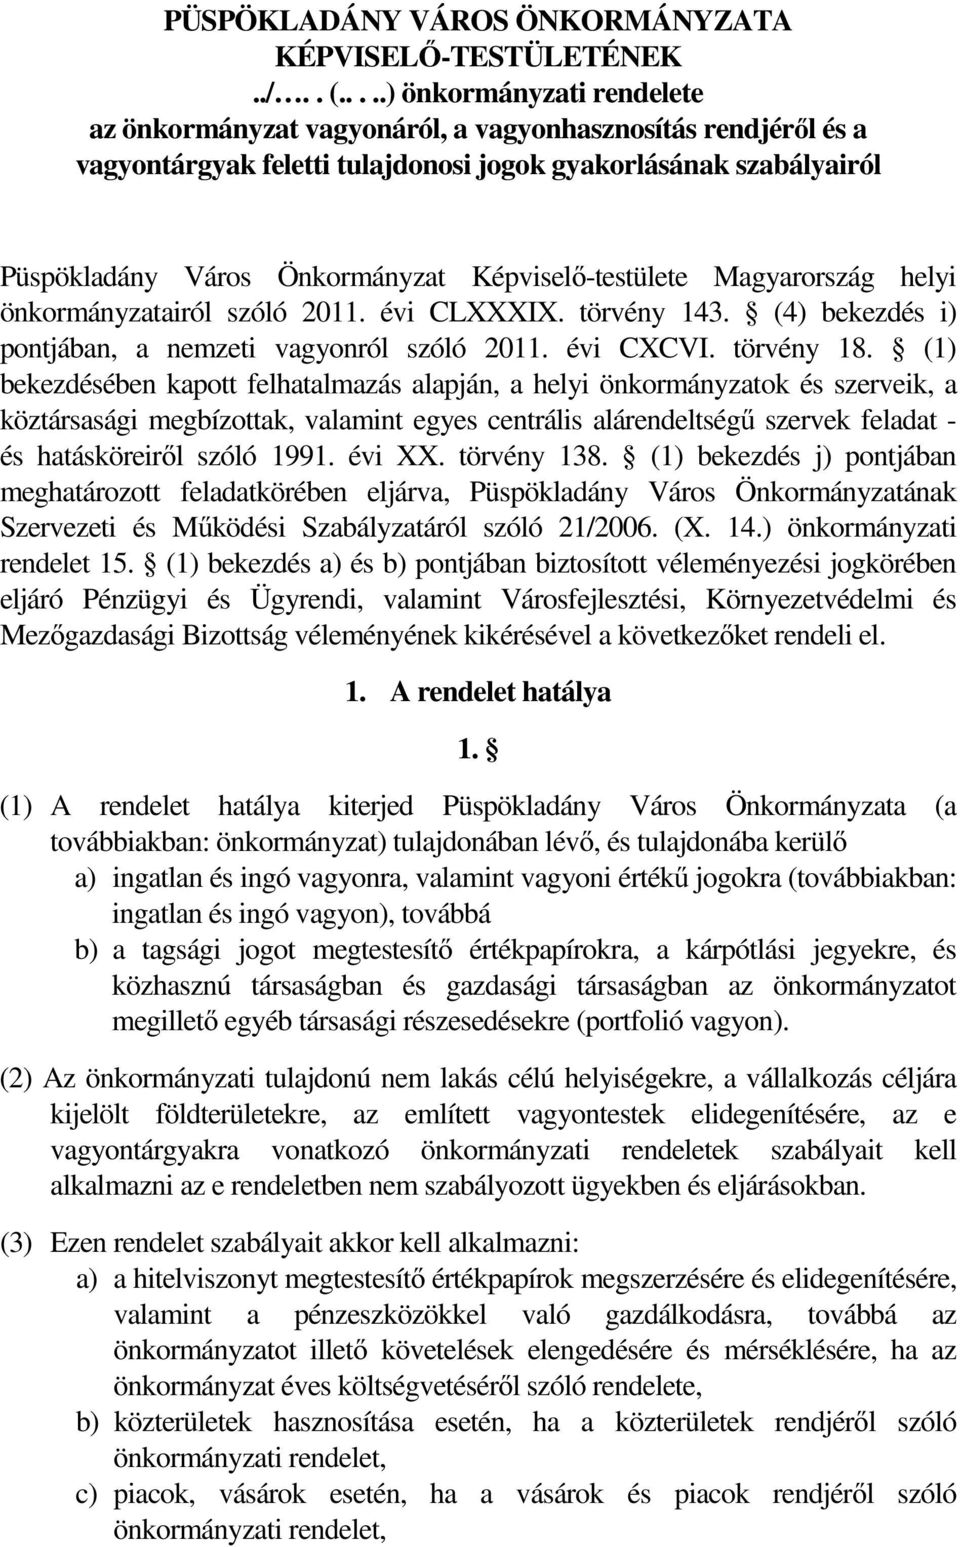 Képviselő-testülete Magyarország helyi önkormányzatairól szóló 2011. évi CLXXXIX. törvény 143. (4) bekezdés i) pontjában, a nemzeti vagyonról szóló 2011. évi CXCVI. törvény 18.